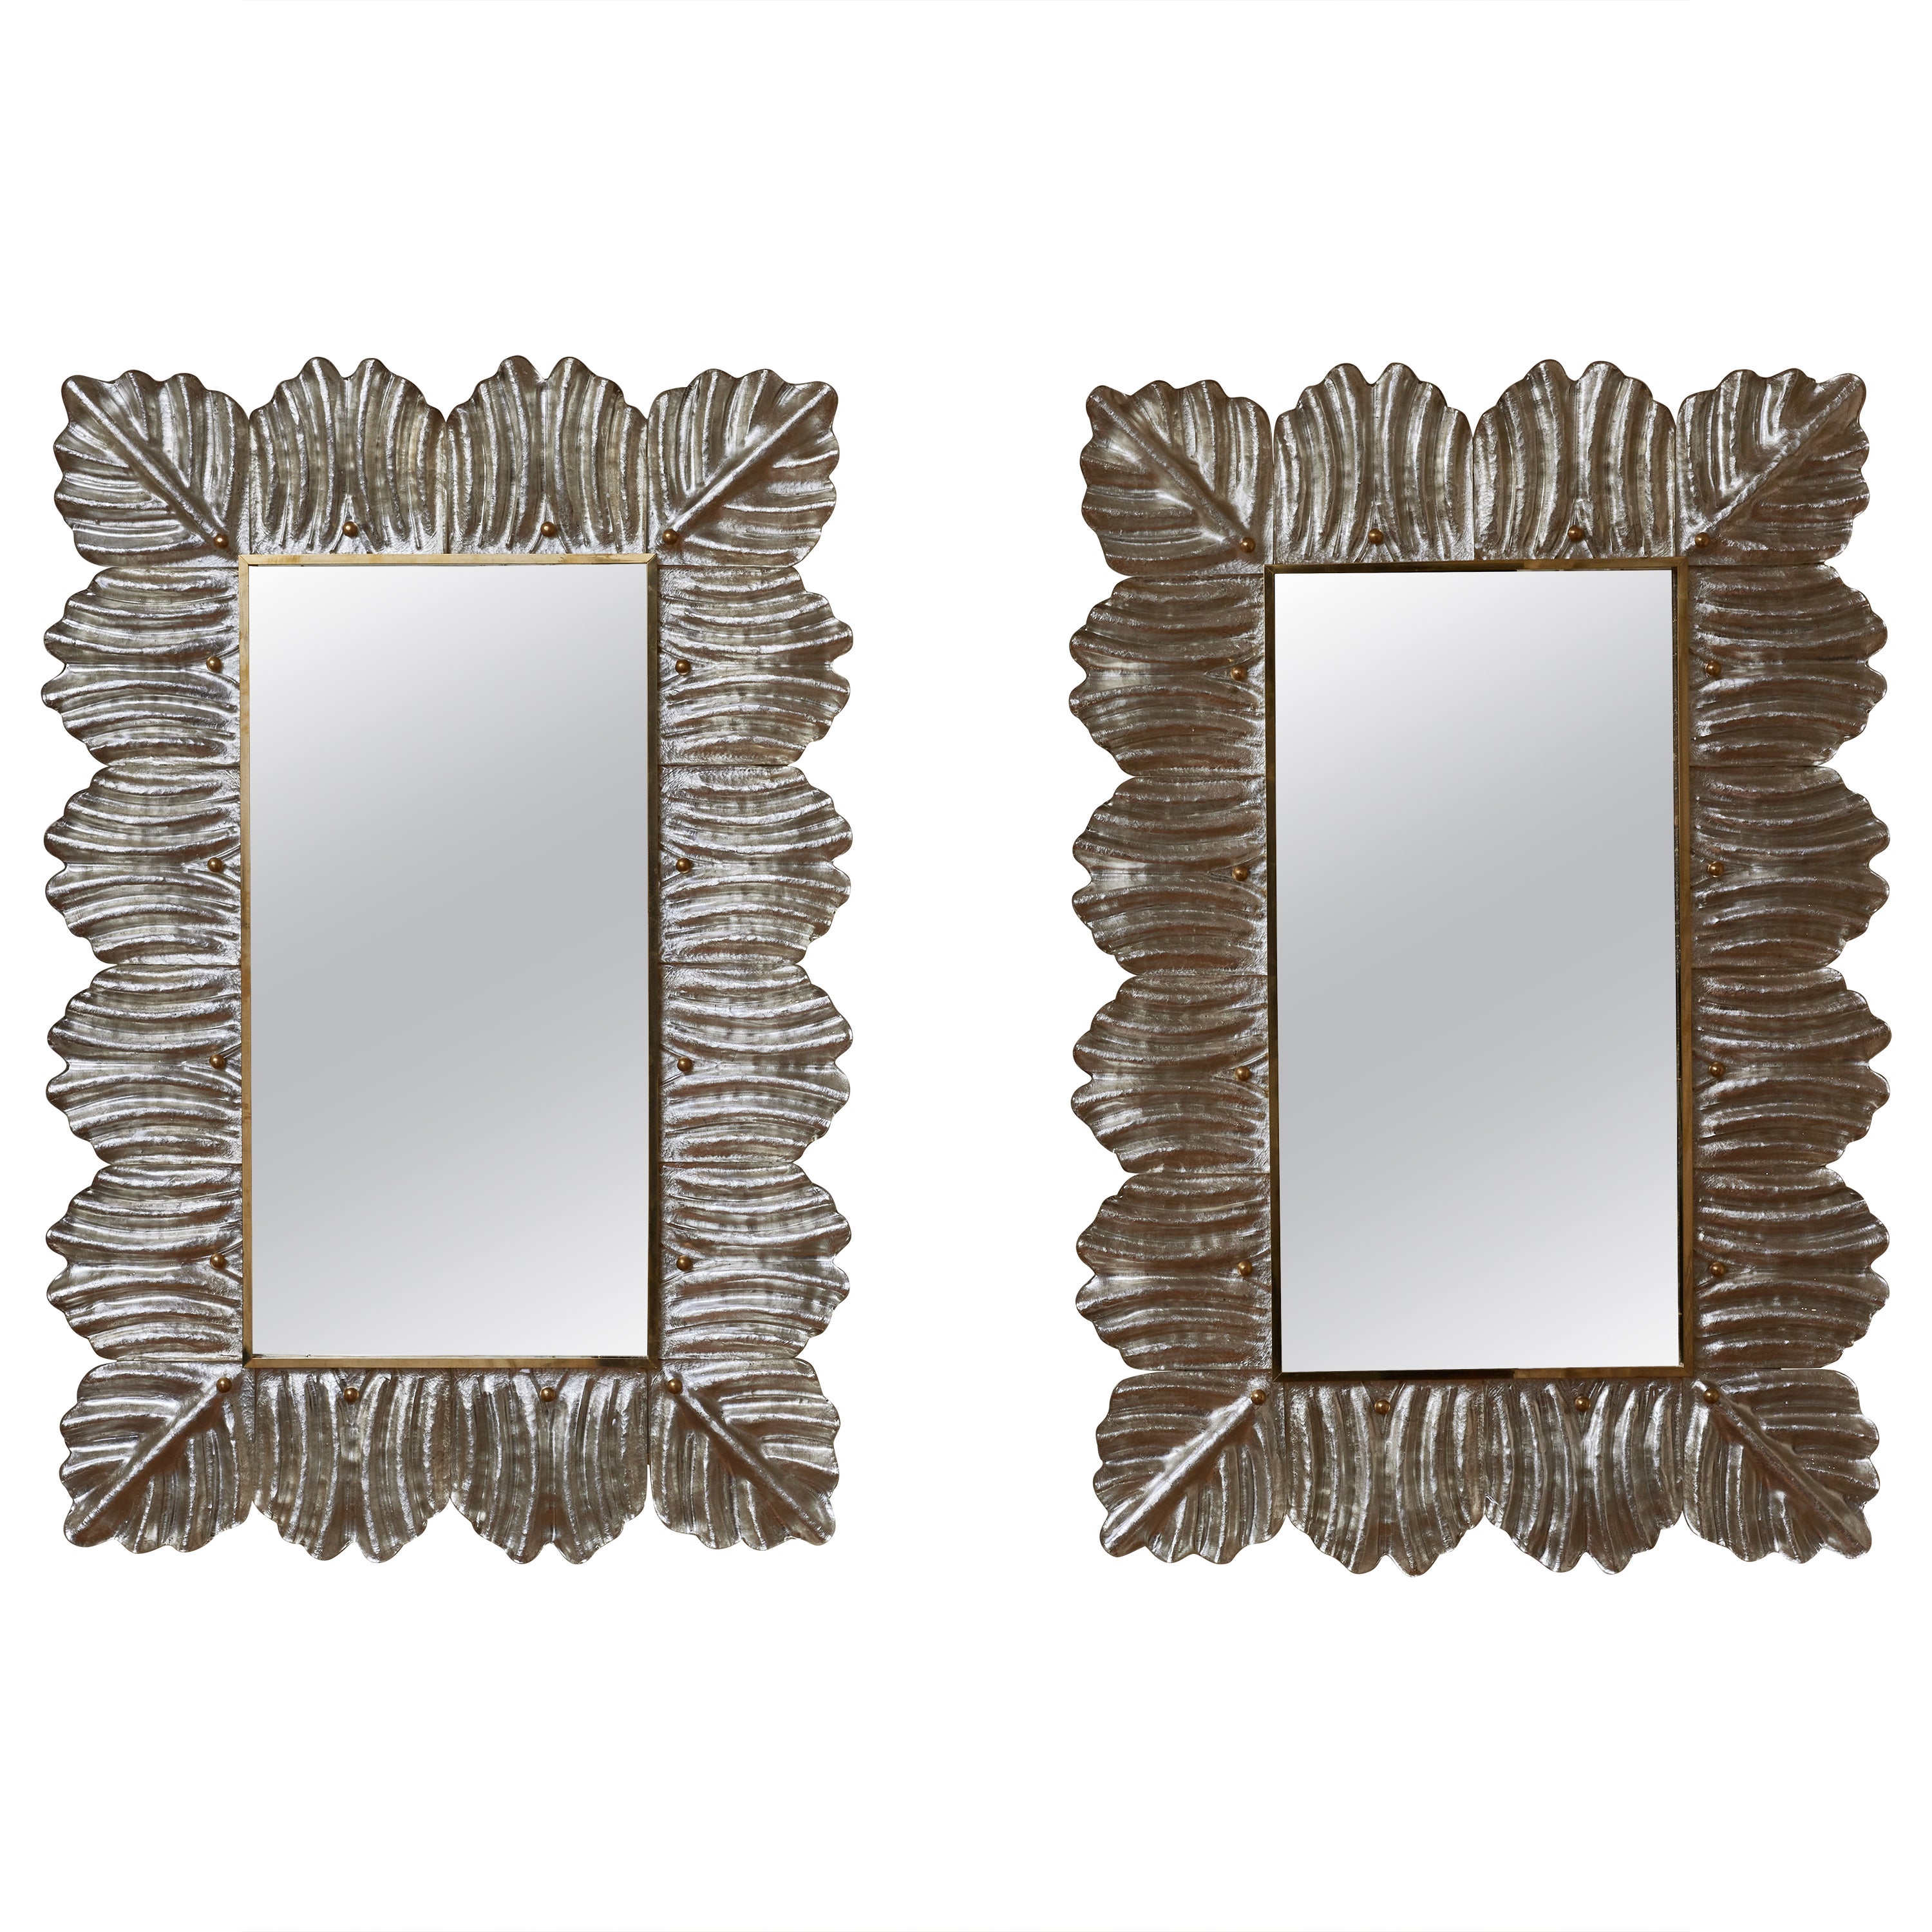 "Silver Leaf" mirrors by Studio Glustin